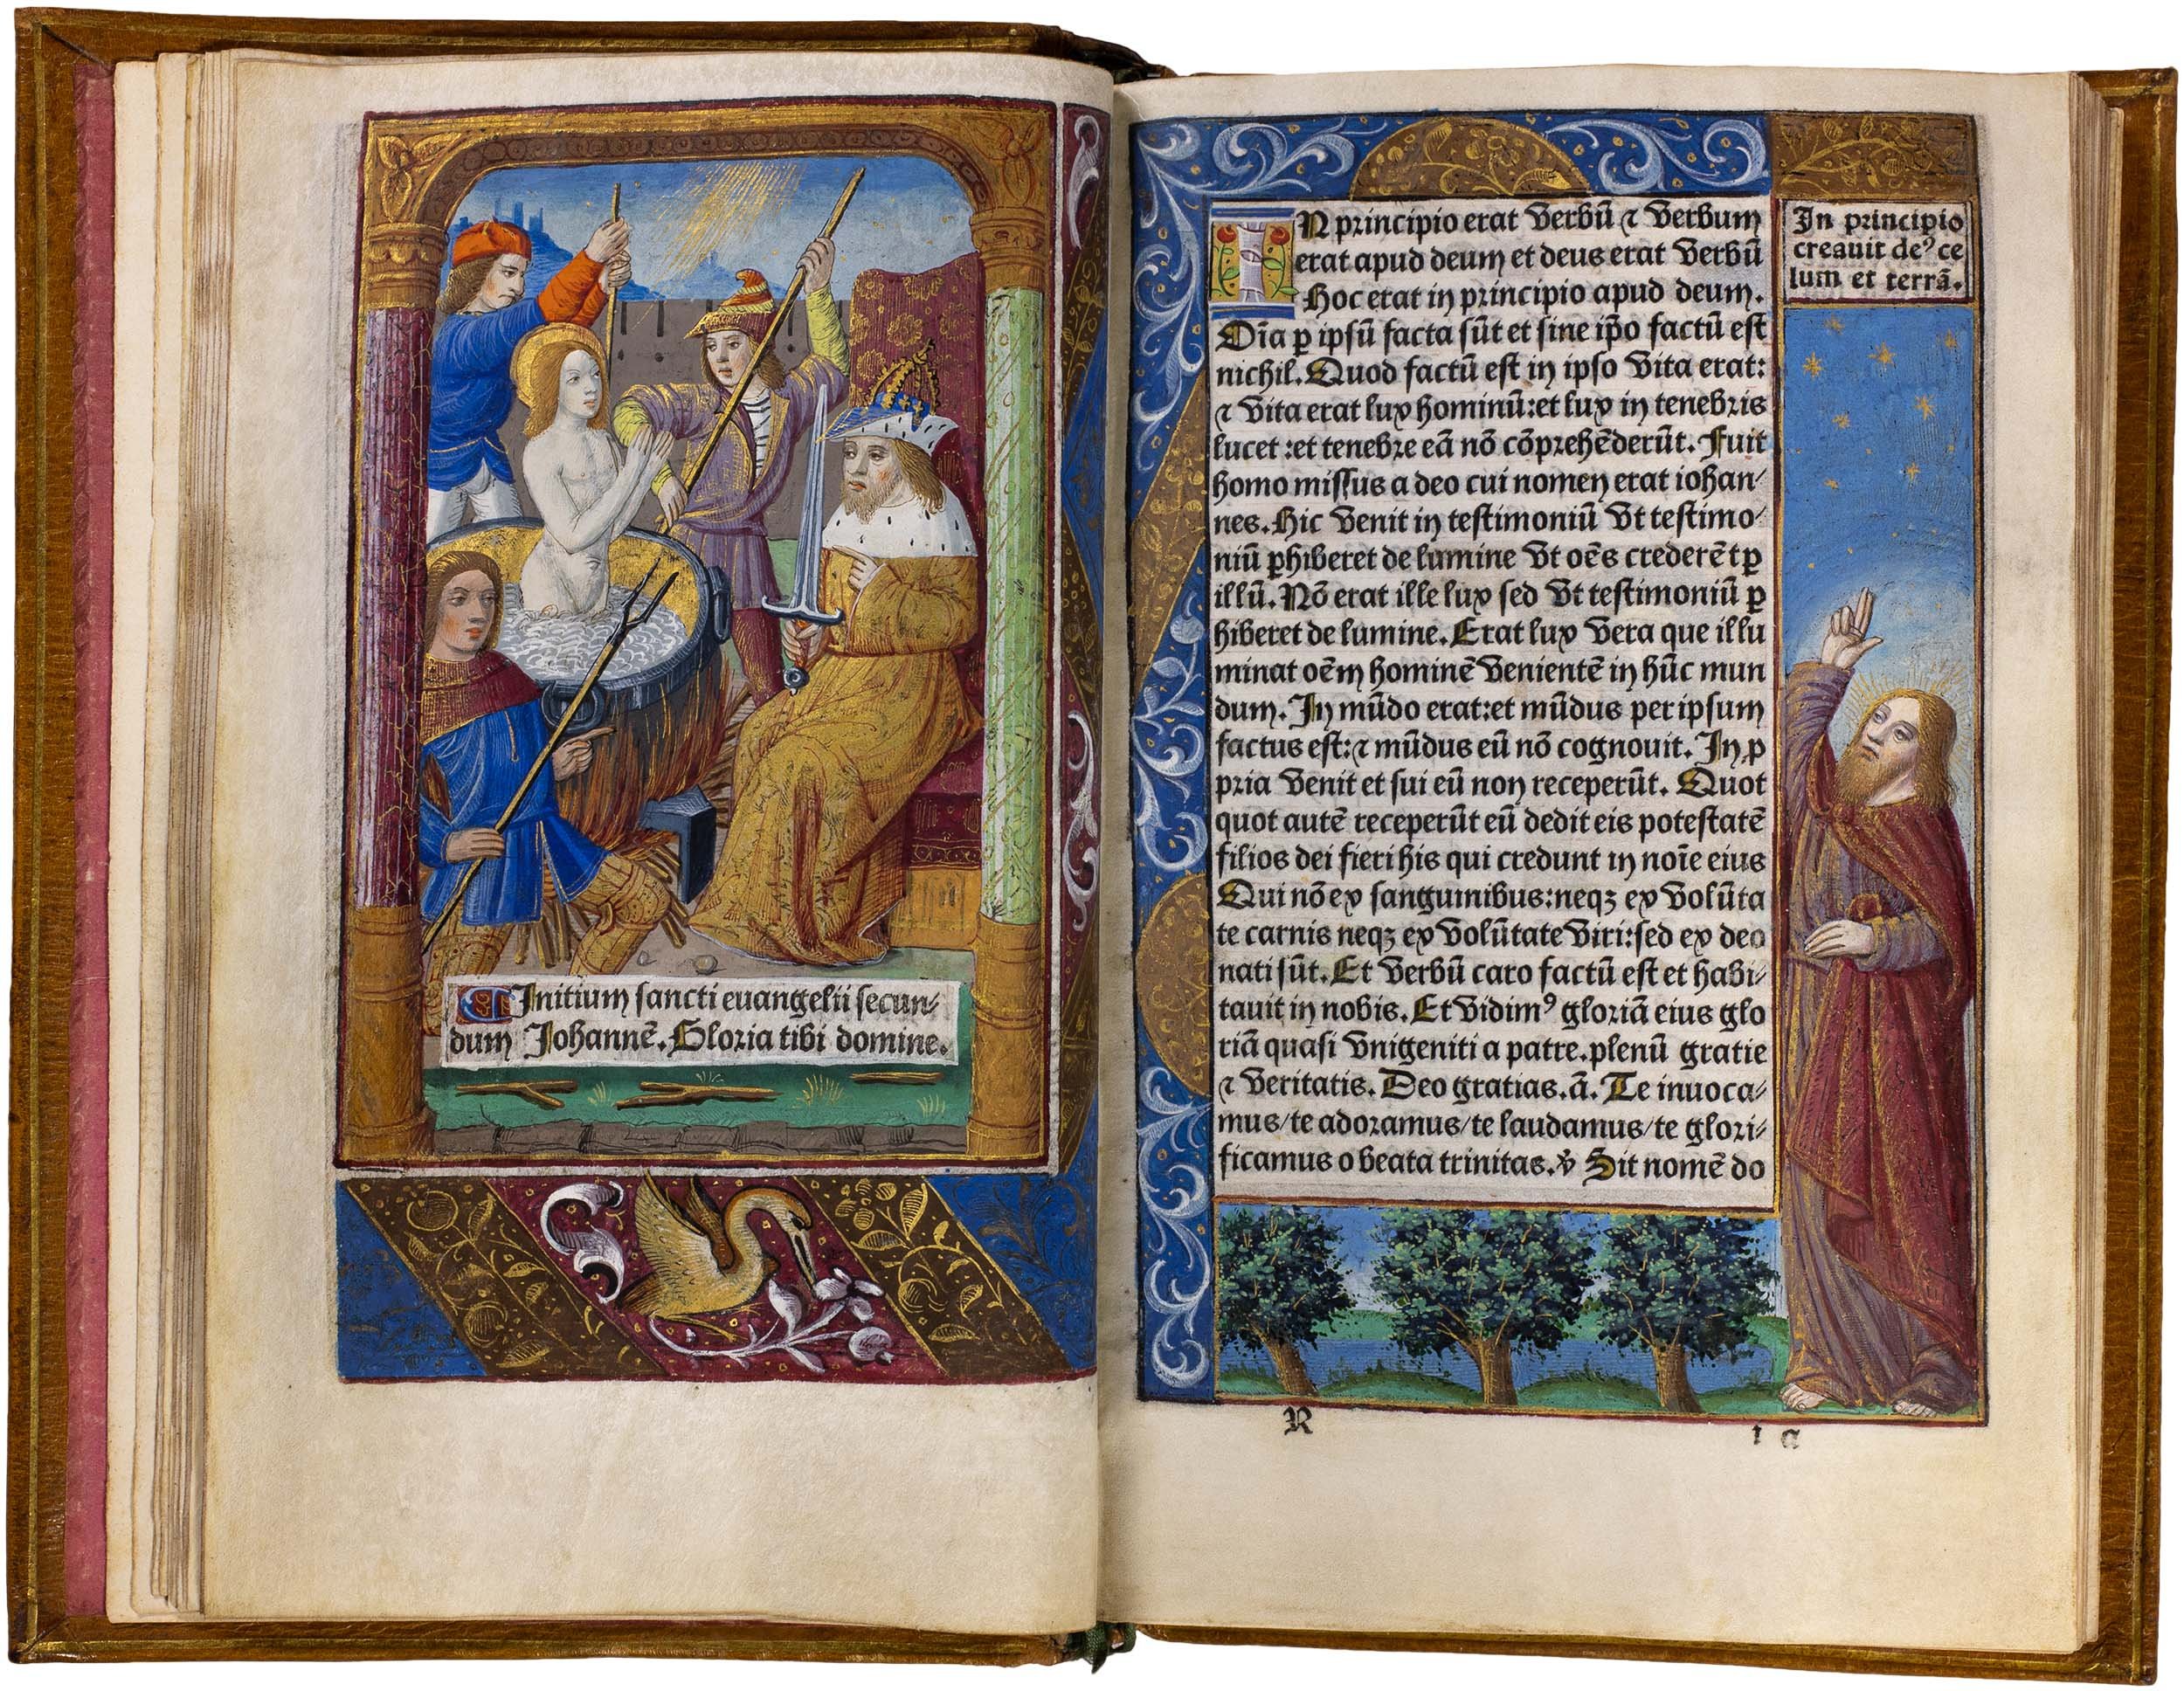 Horae-bmv-pigouchet-19-april-1494-pigouchet-robert-gaguin-illuminated-vellum-copy-13.jpg